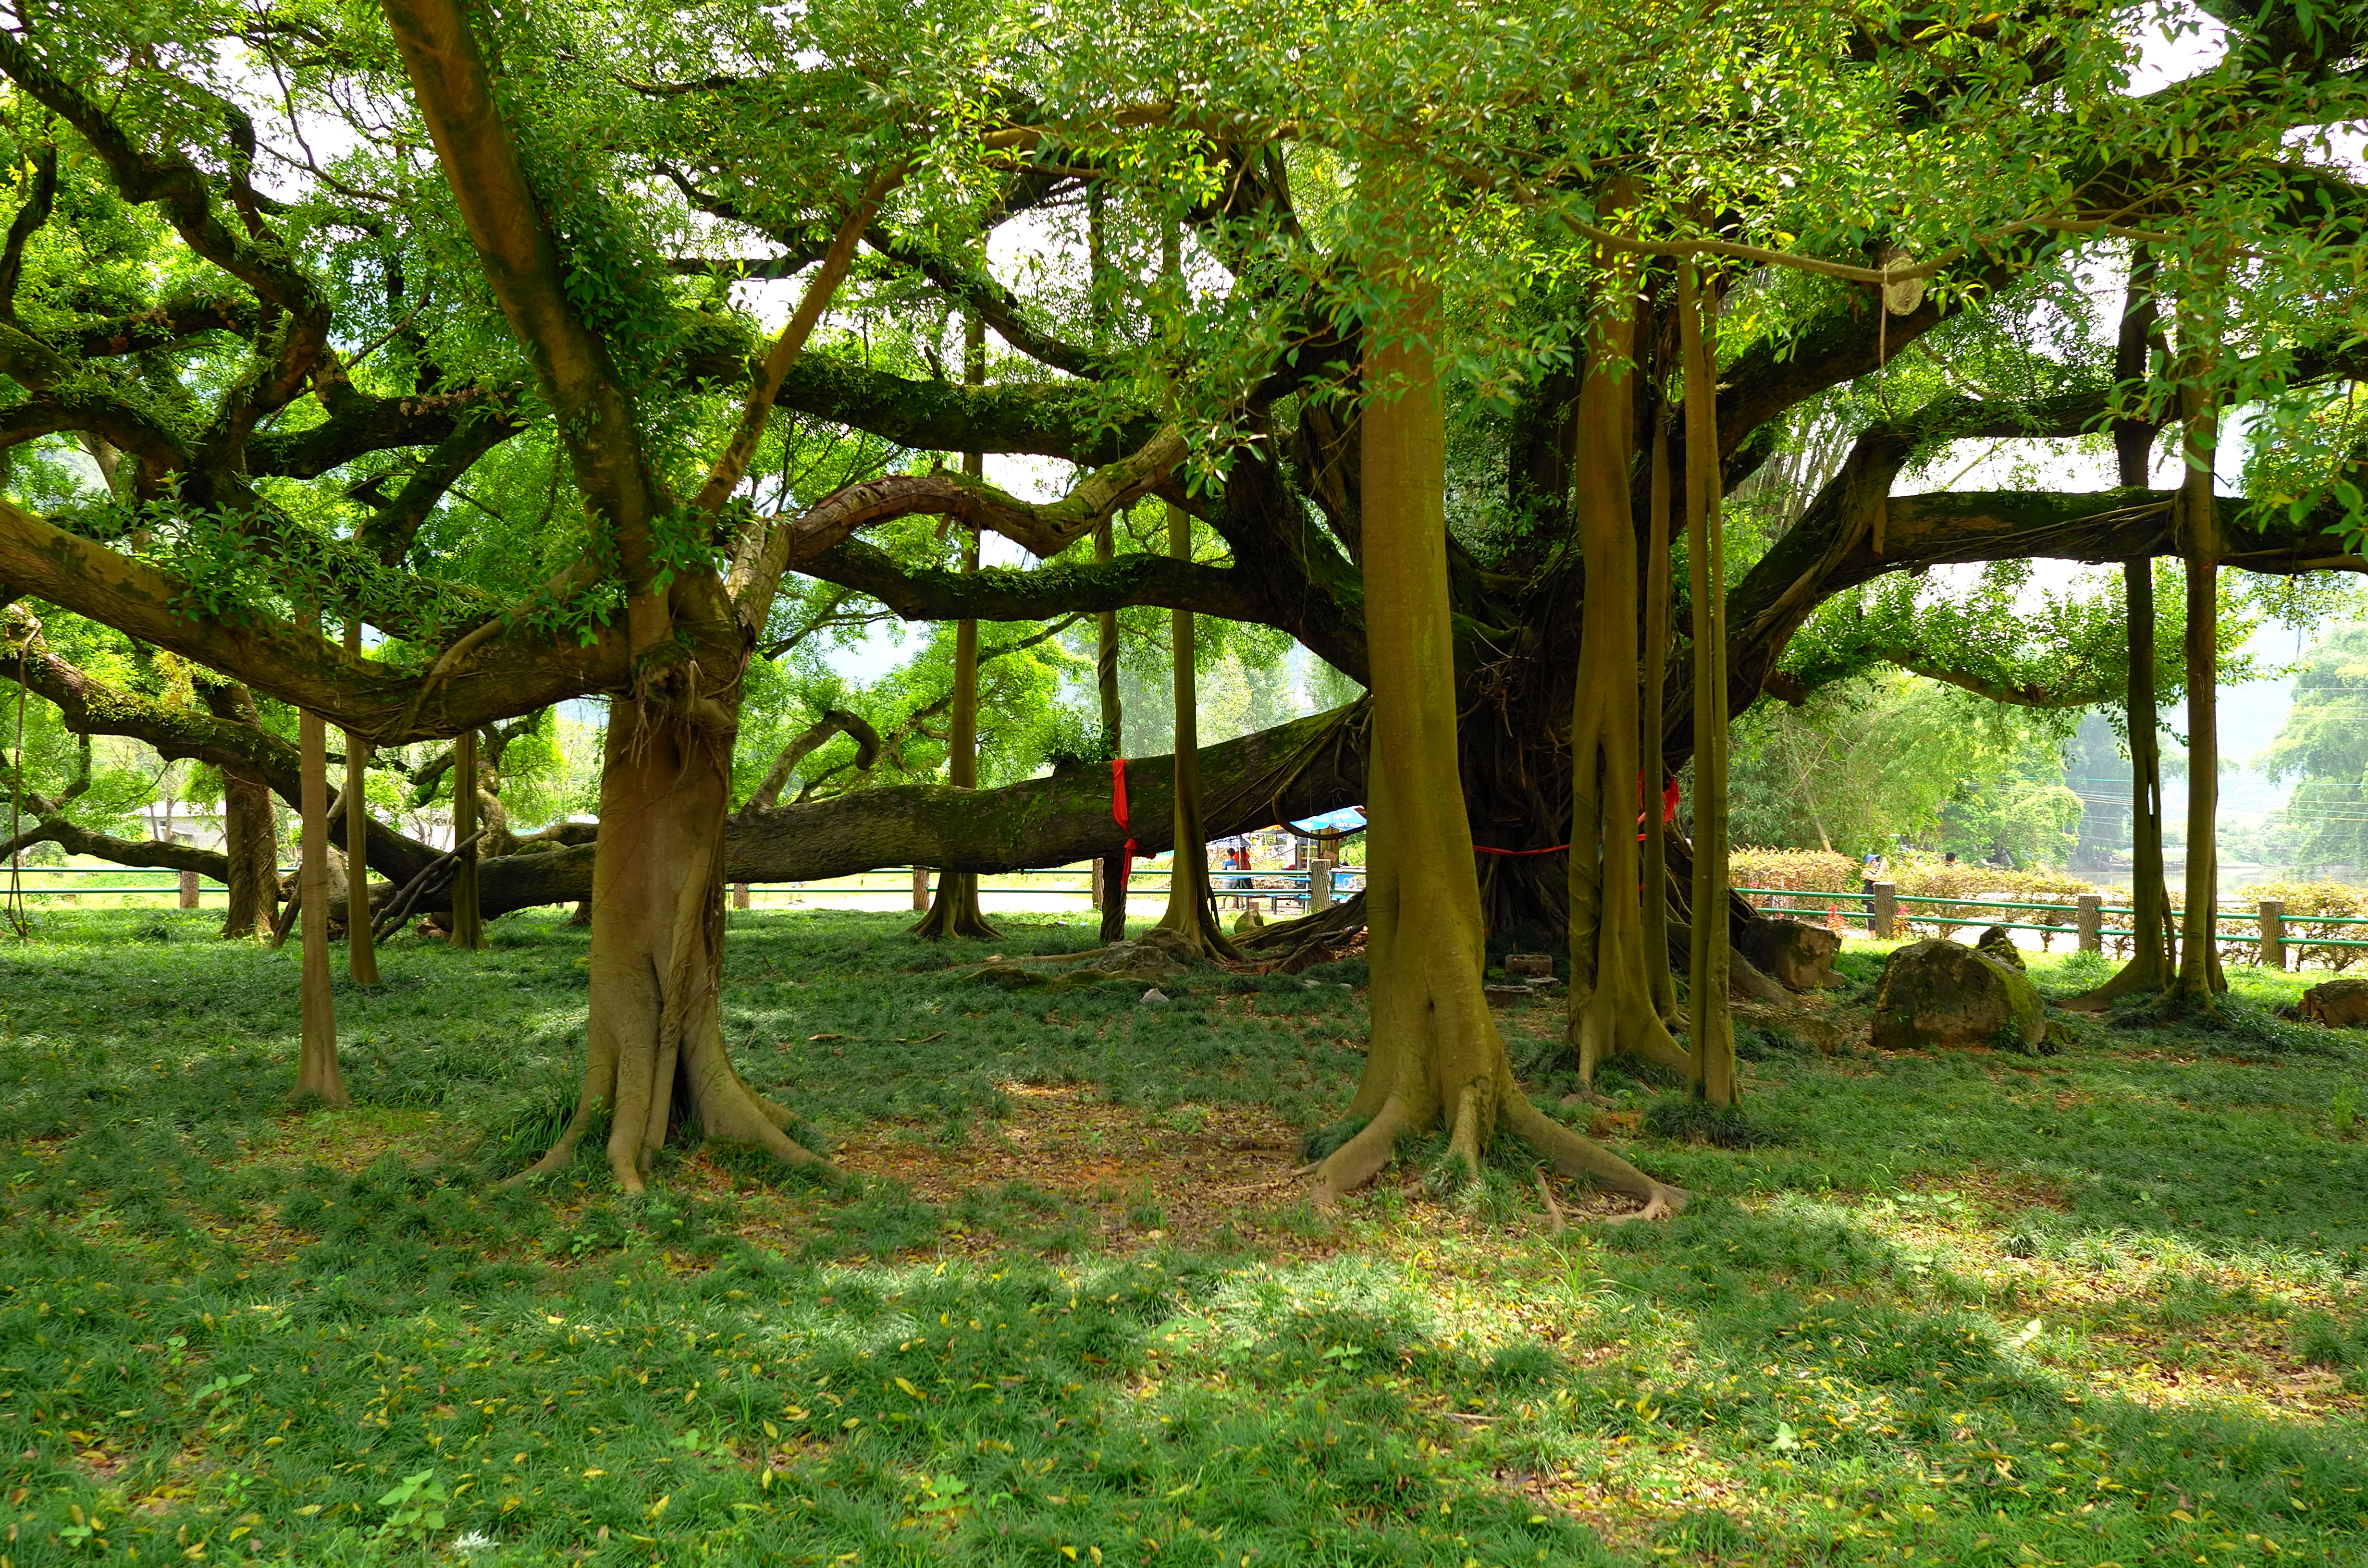 广西大榕树照片图片